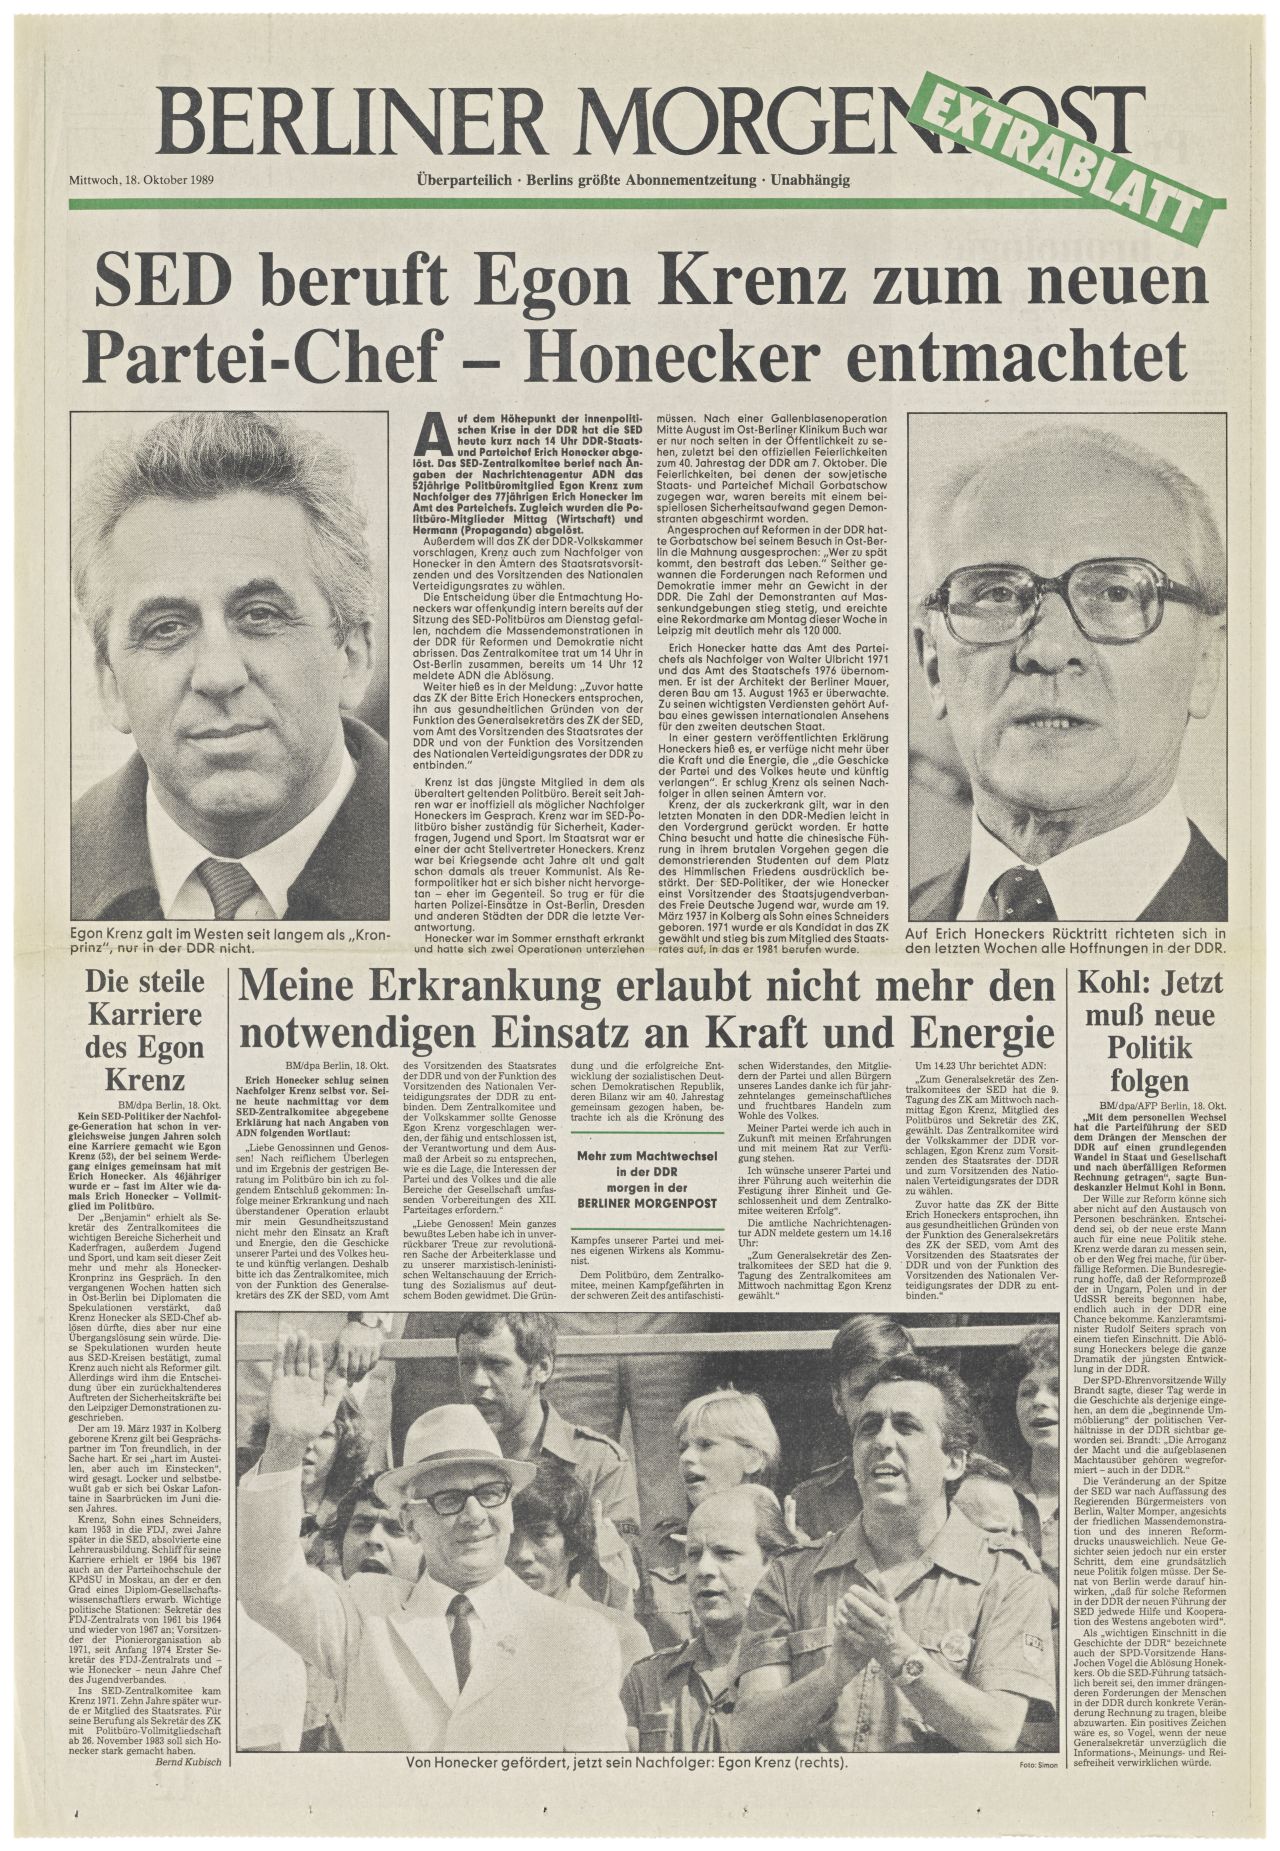 1 Blatt; doppelseitig bedruckt; Schlagzeile auf der Titelseite: SED beruft Egon Krenz zum neuen Partei-Chef - Honecker entmachtet; darunter schwarz/weiß-Fotos von Egon Krenz und Erich Honecker.